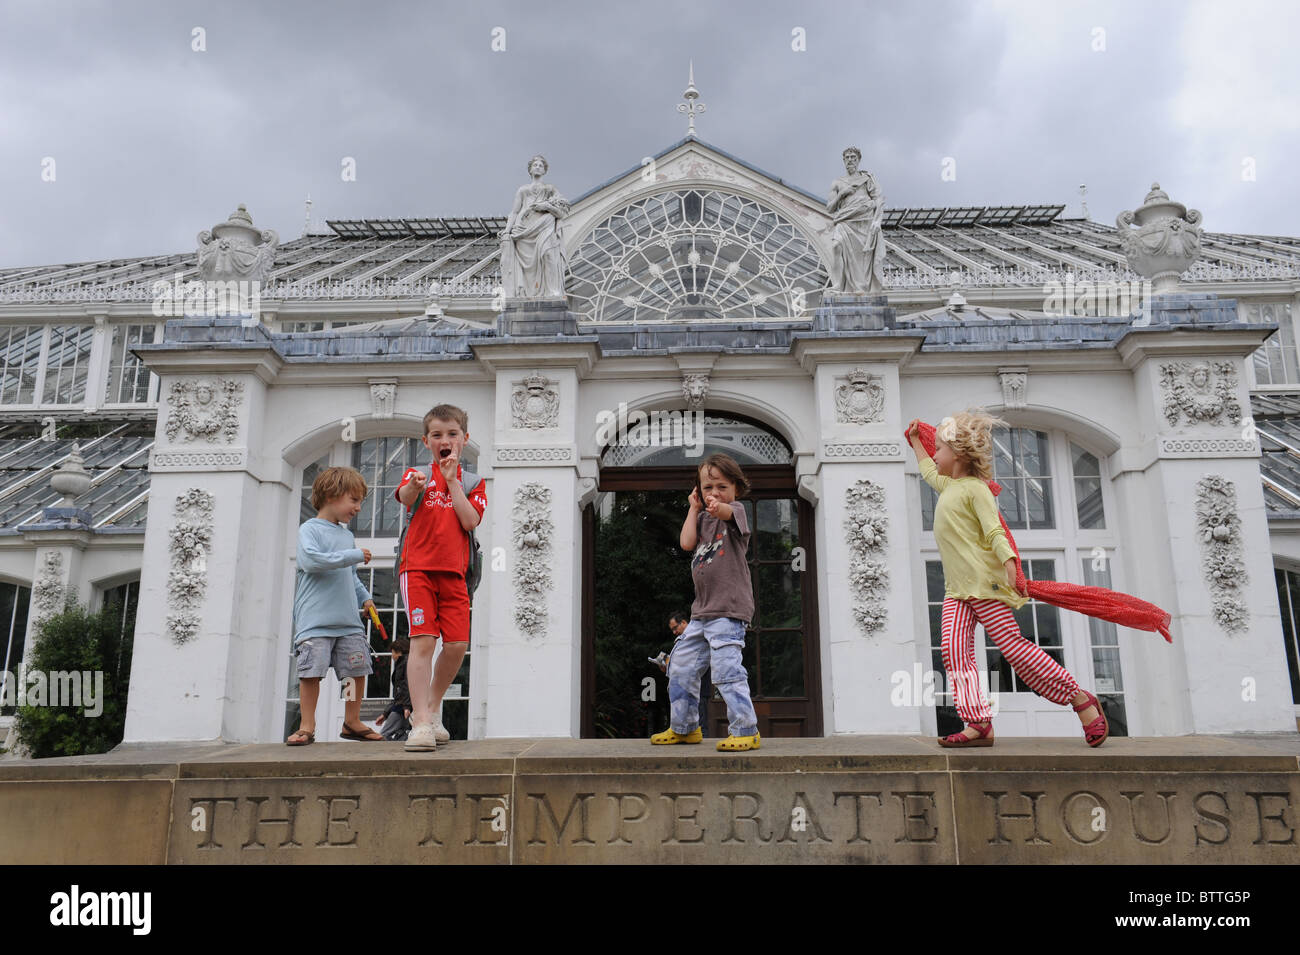 Enfants jouant à la maison tempérée à Kew Gardens Londres Banque D'Images